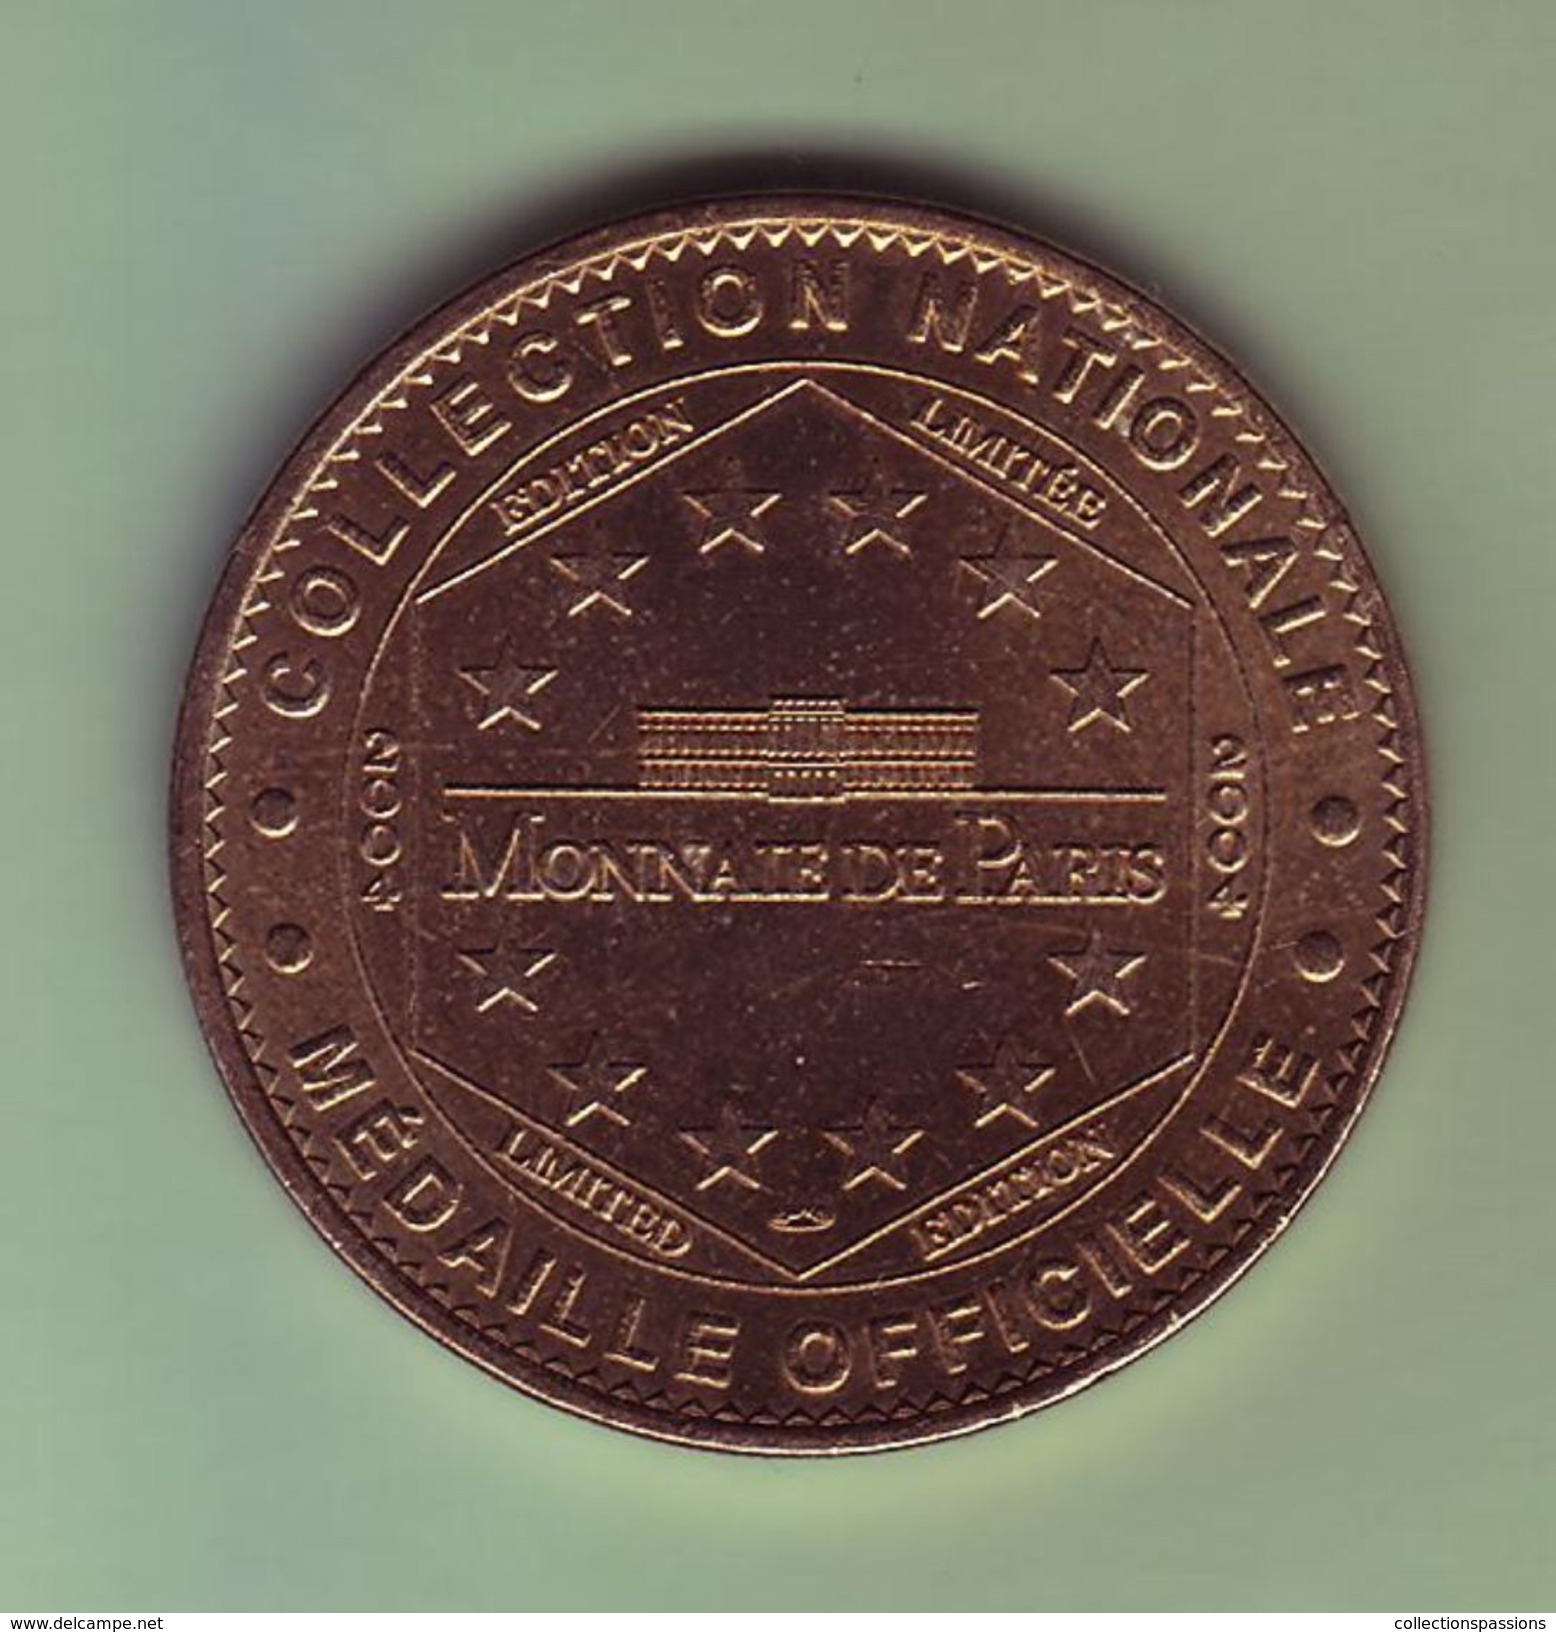 Médaille. Jeton Touristique - Monnaie De Paris - AIN - Monastère Royal De Brou - 2004 - - 2004